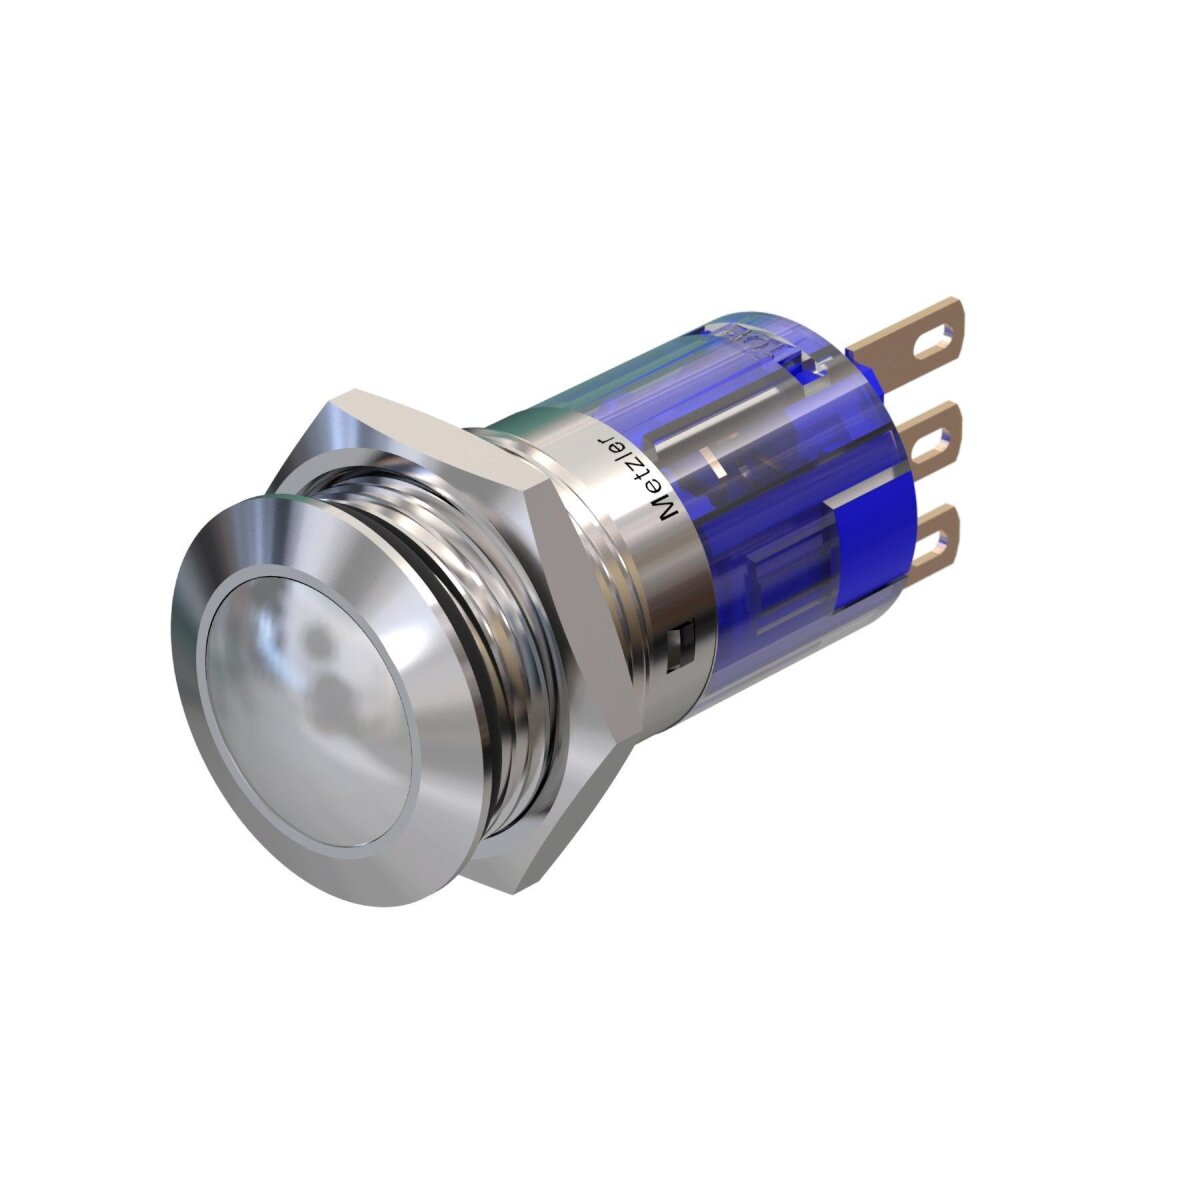 LED-Drucktaster Einbau-Durchmesser 16 mm Tastend, Weiß rostfrei wasserdicht Vandalismus-geschützt Edelstahl mit Ringbeleuchtung 